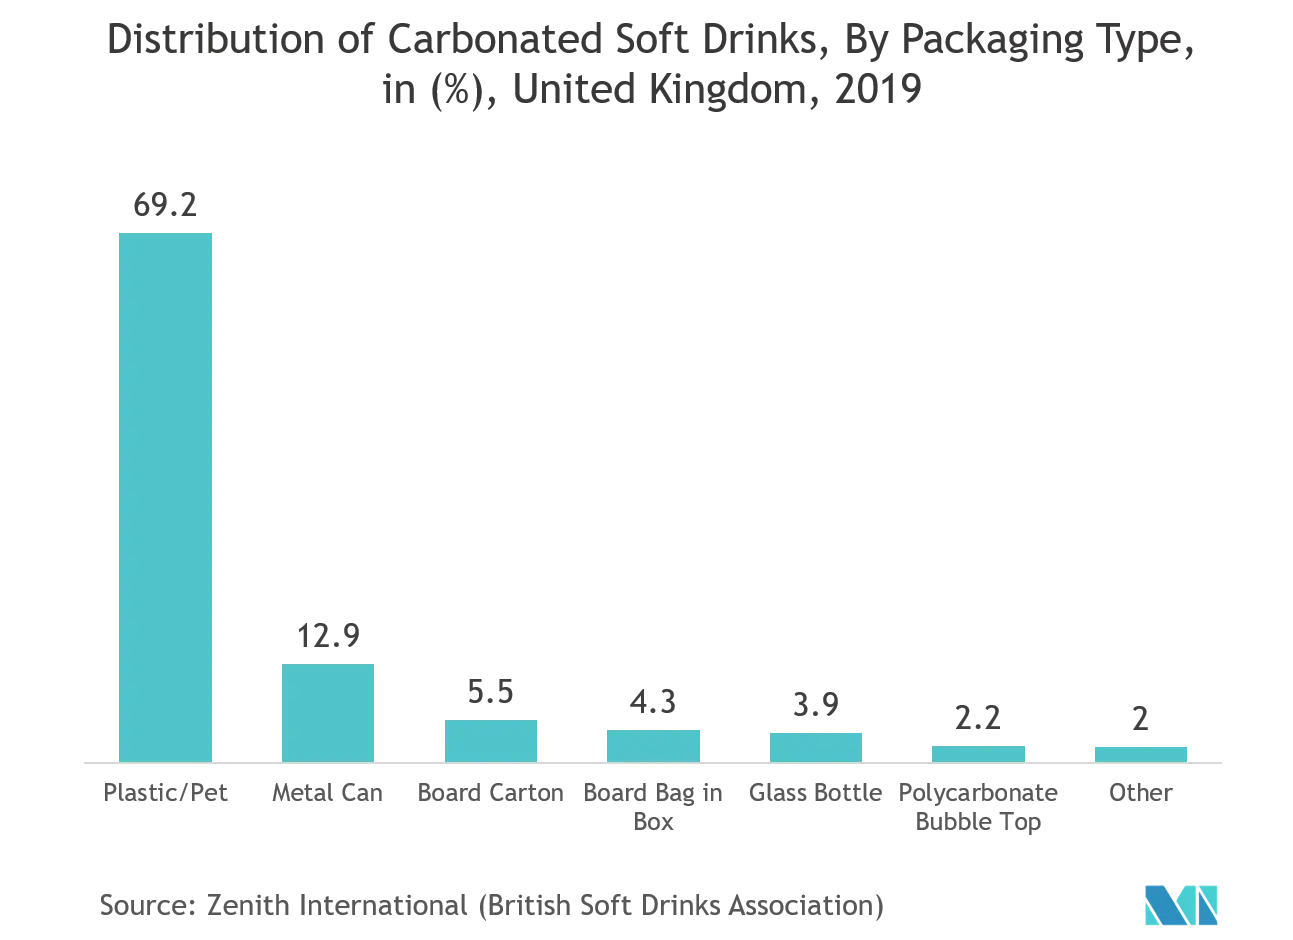 Mercado europeu de testes de embalagens distribuição de refrigerantes carbonatados, por tipo de embalagem, em (%), Reino Unido, 2019